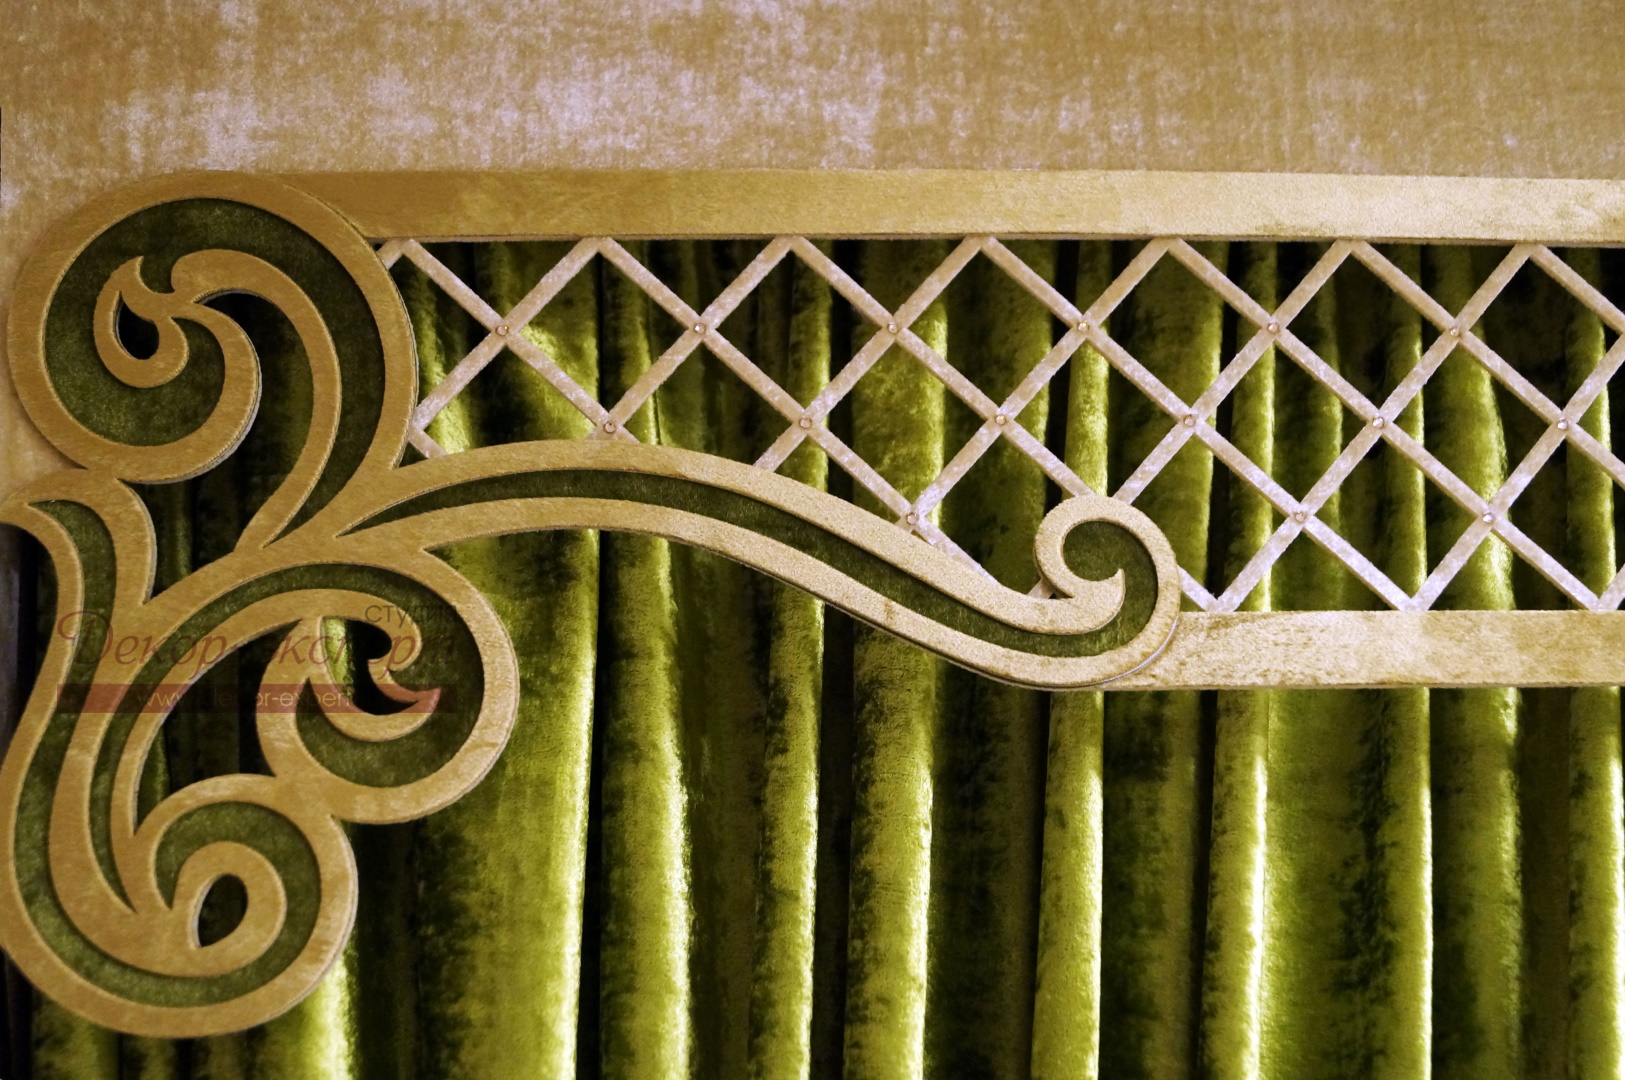 Фрагмент ажурного ламбрекена «Испанская роза-4» из бархата с отделкой стразами в узлах декоративной решётки.